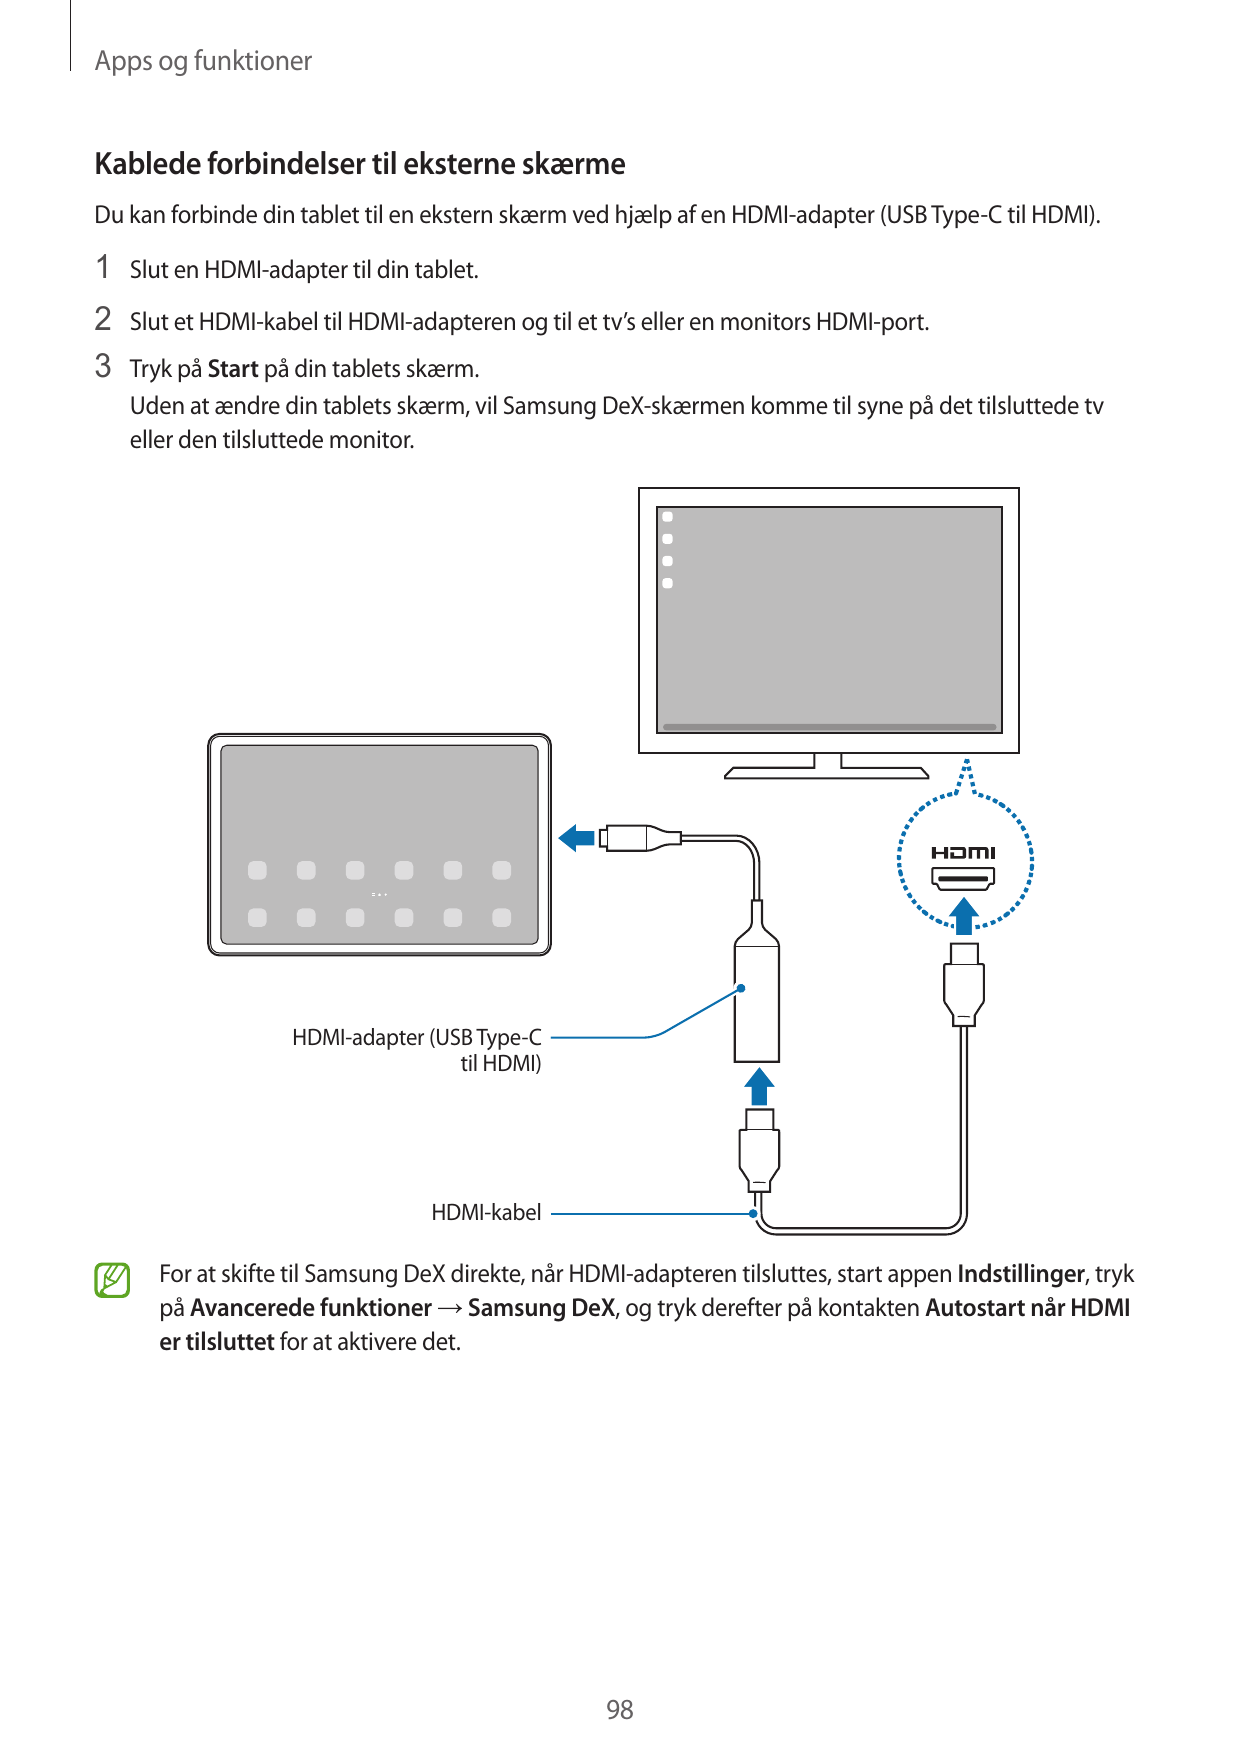 Apps og funktionerKablede forbindelser til eksterne skærmeDu kan forbinde din tablet til en ekstern skærm ved hjælp af en HDMI-a